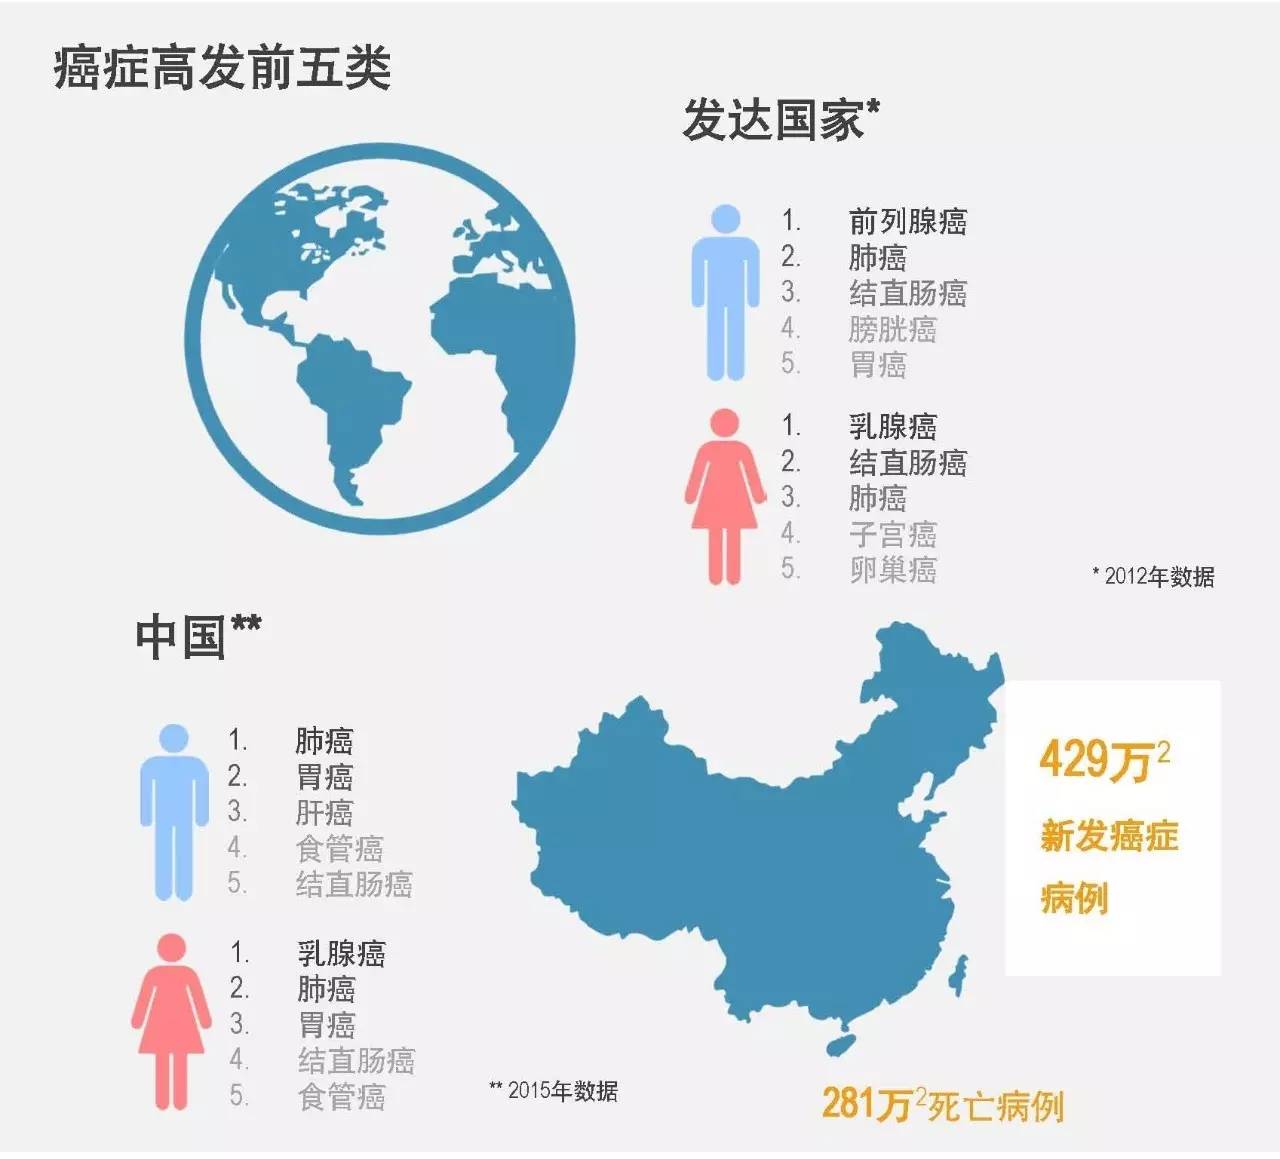 中国癌症生存数据:5年生存率36.9%